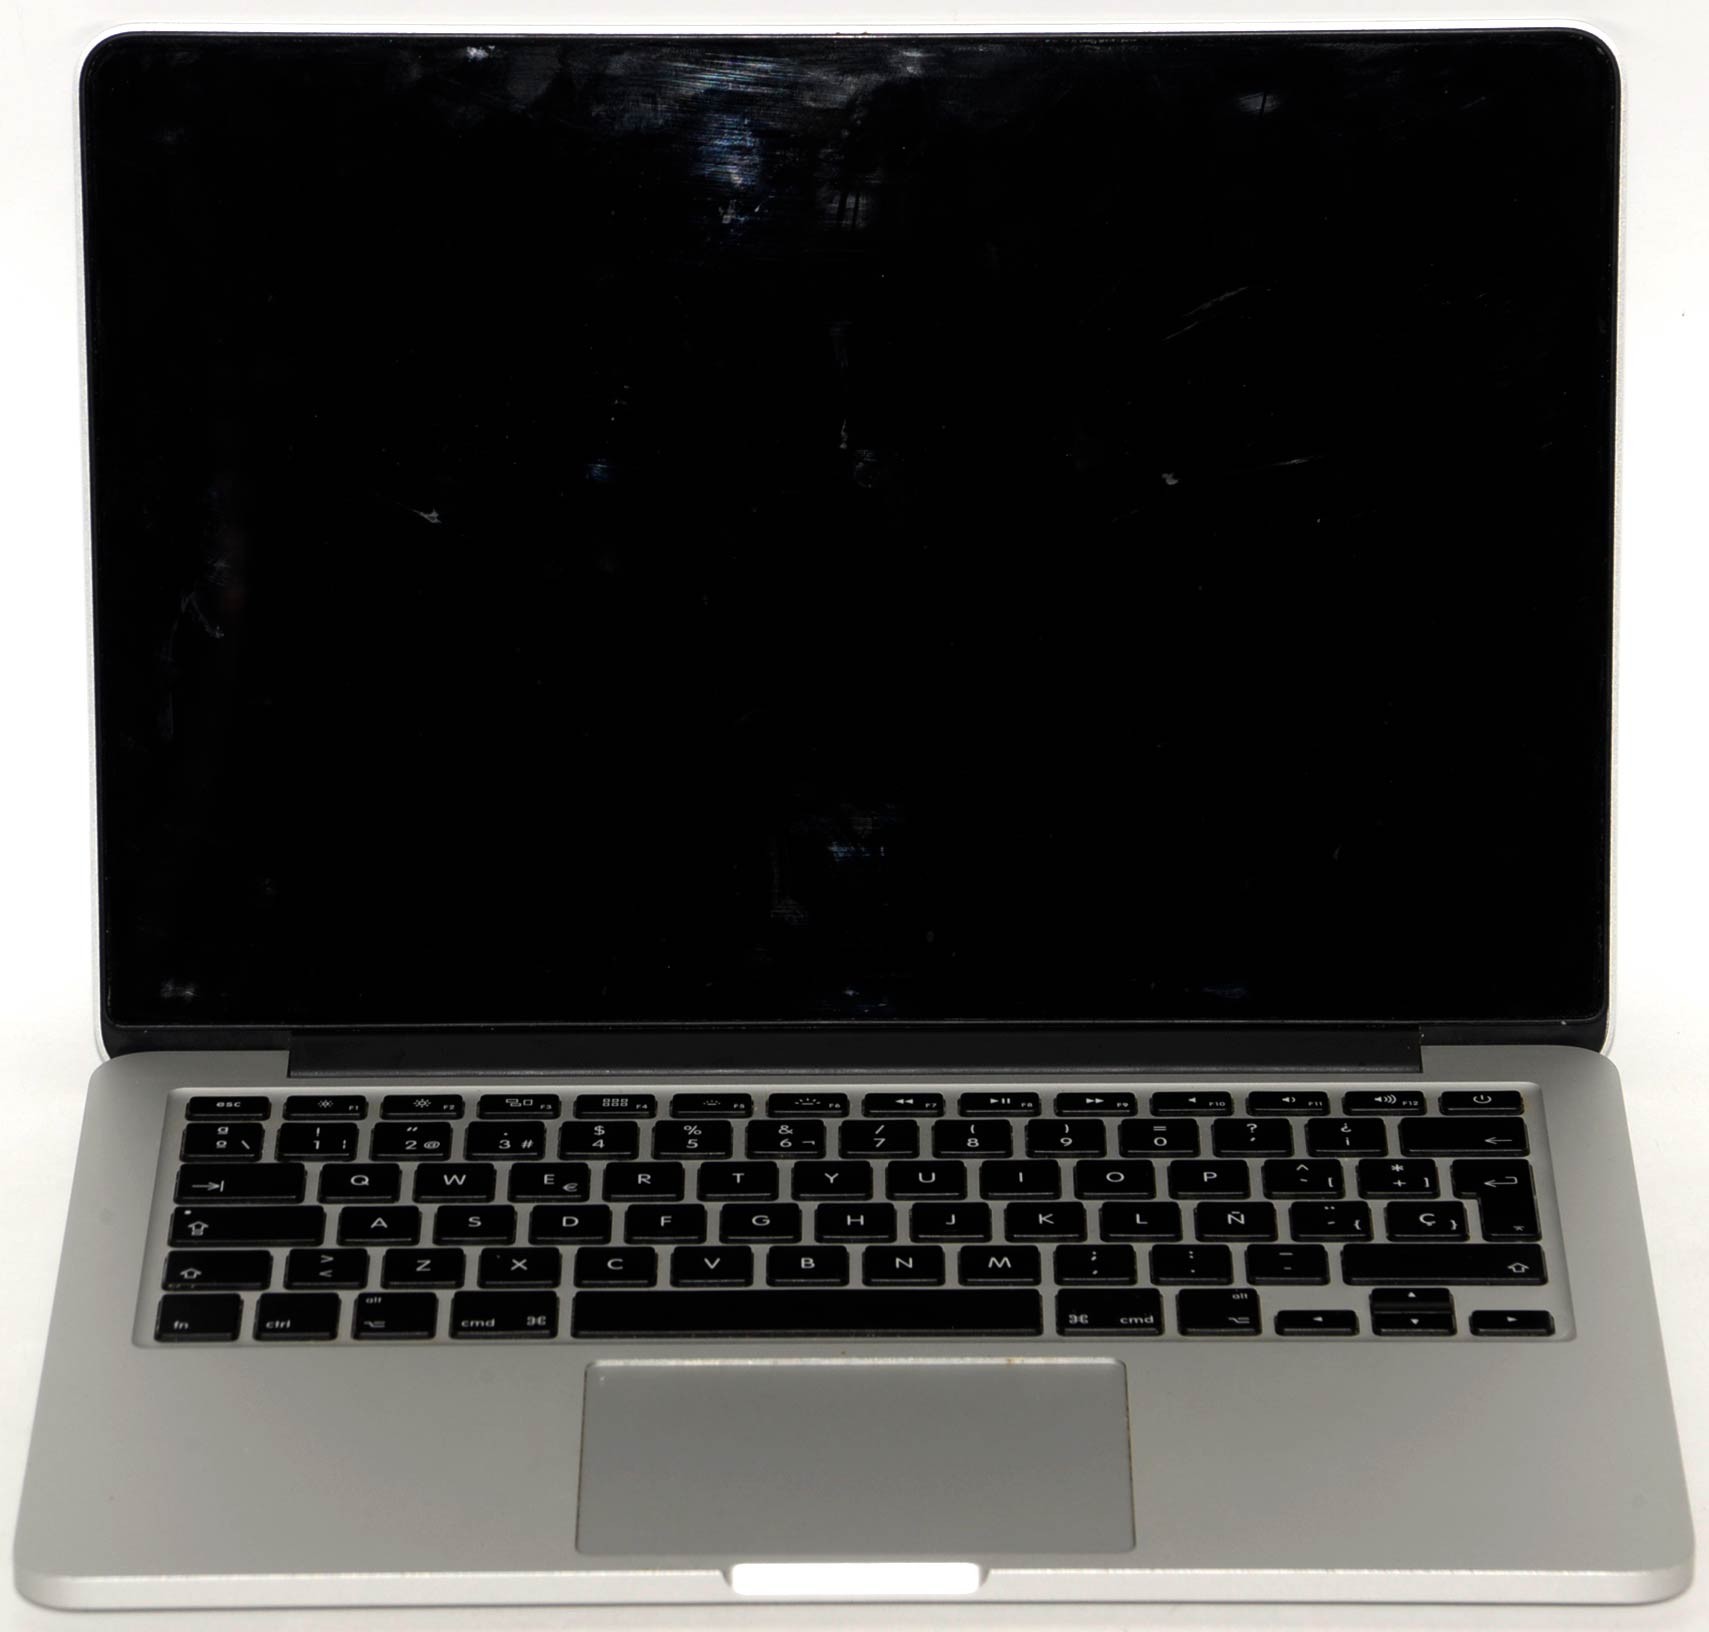 【付属品箱有】MacBook Pro12.1 500GB